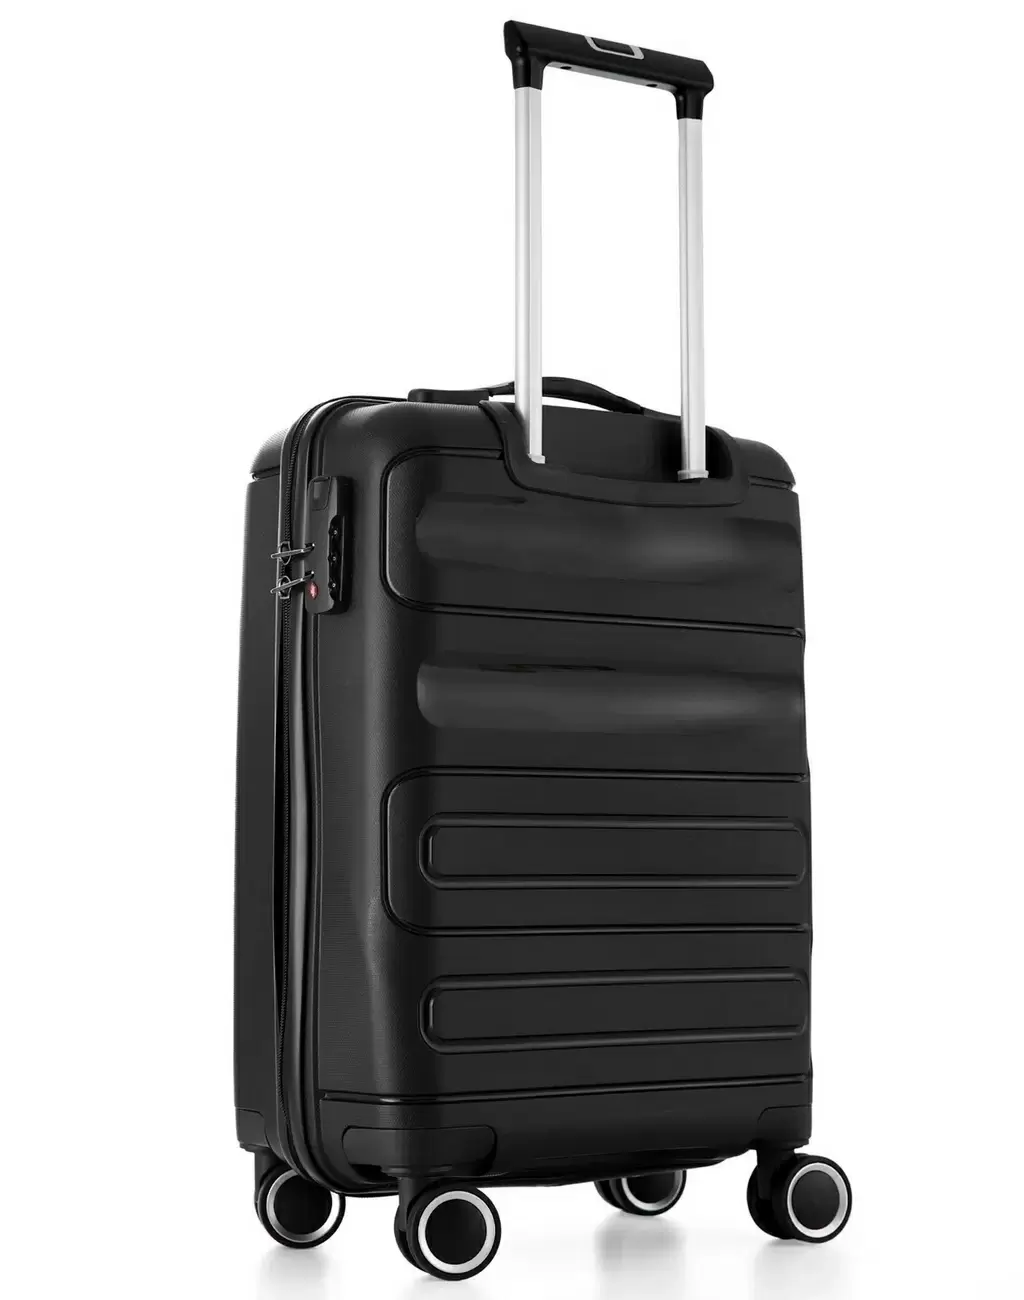 Set de valize CCS 5225 Set, negru